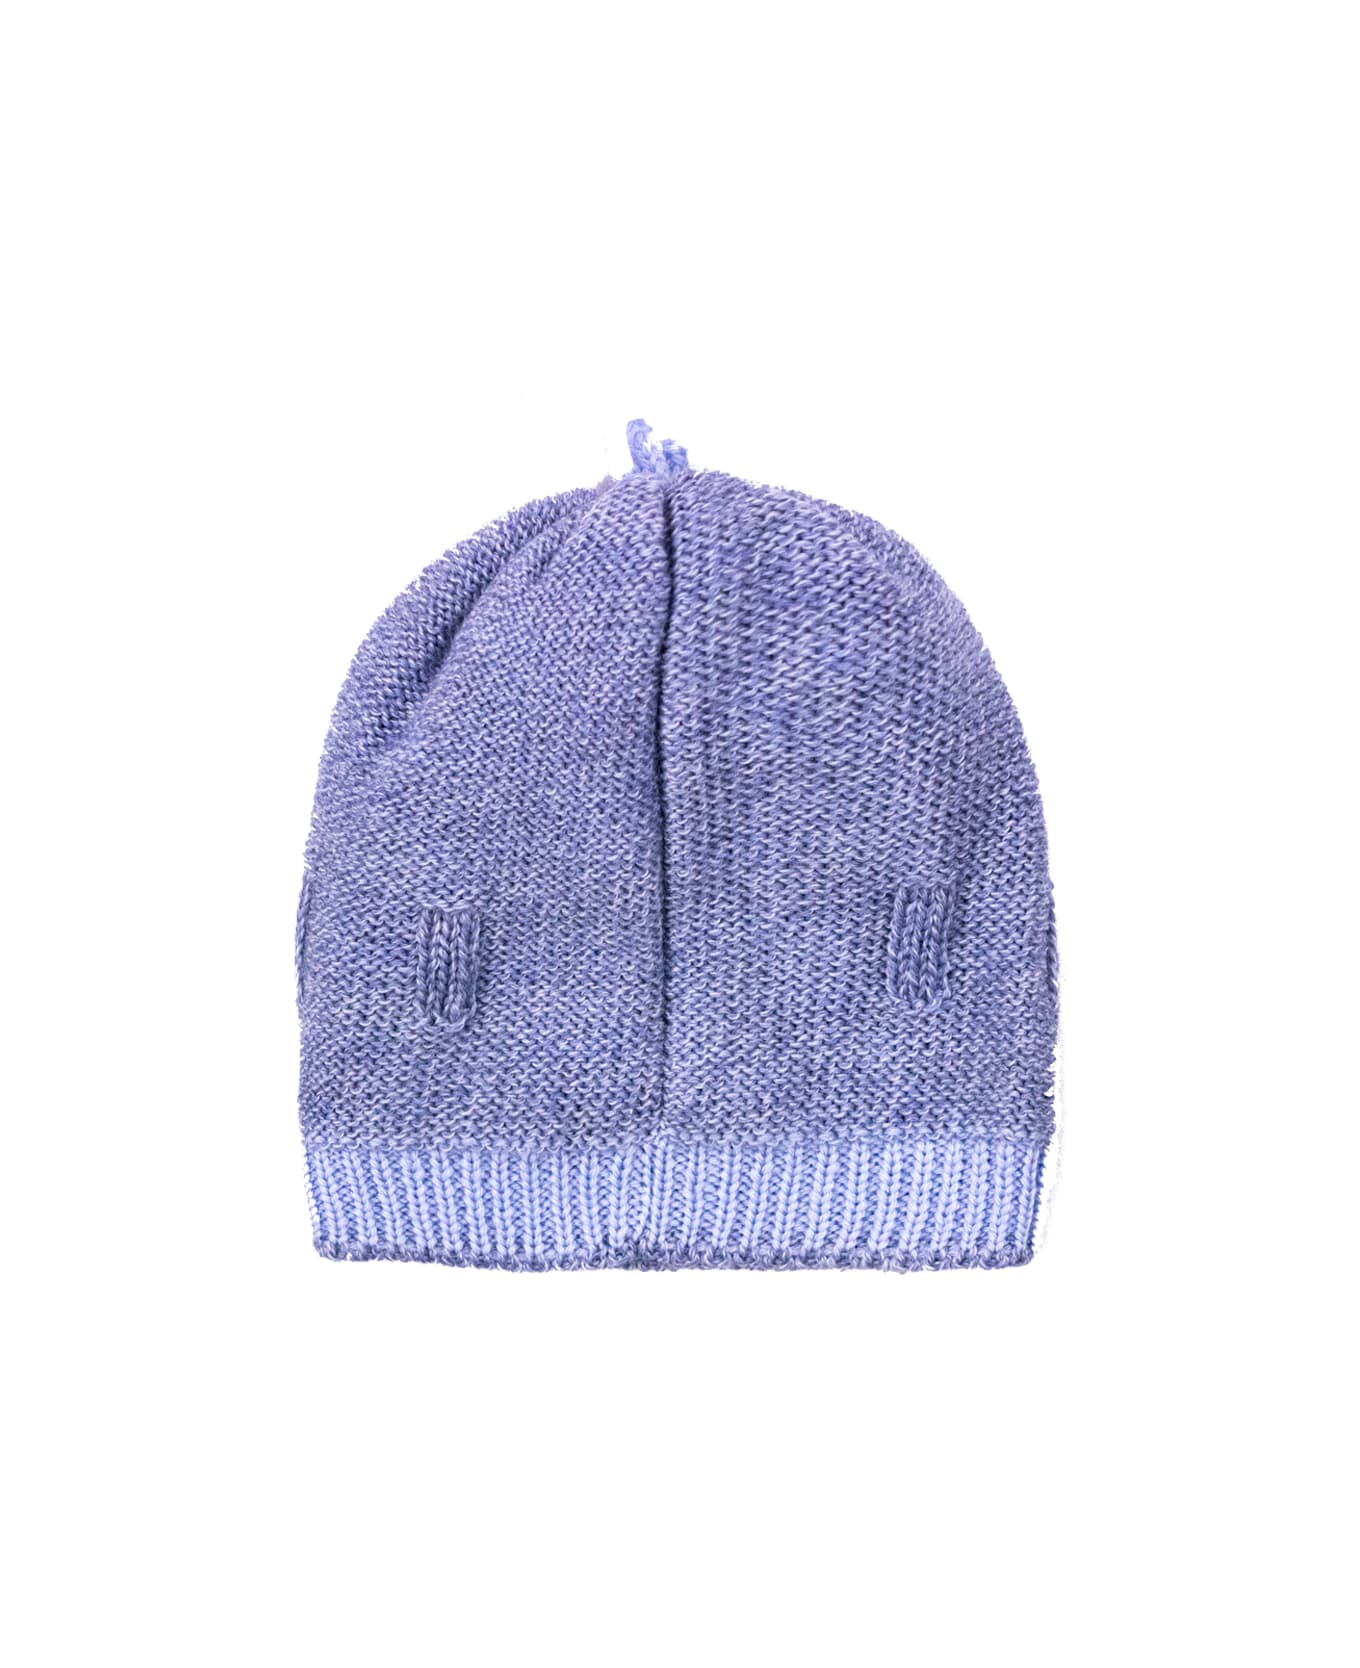 Piccola Giuggiola Wool Hat - Blue